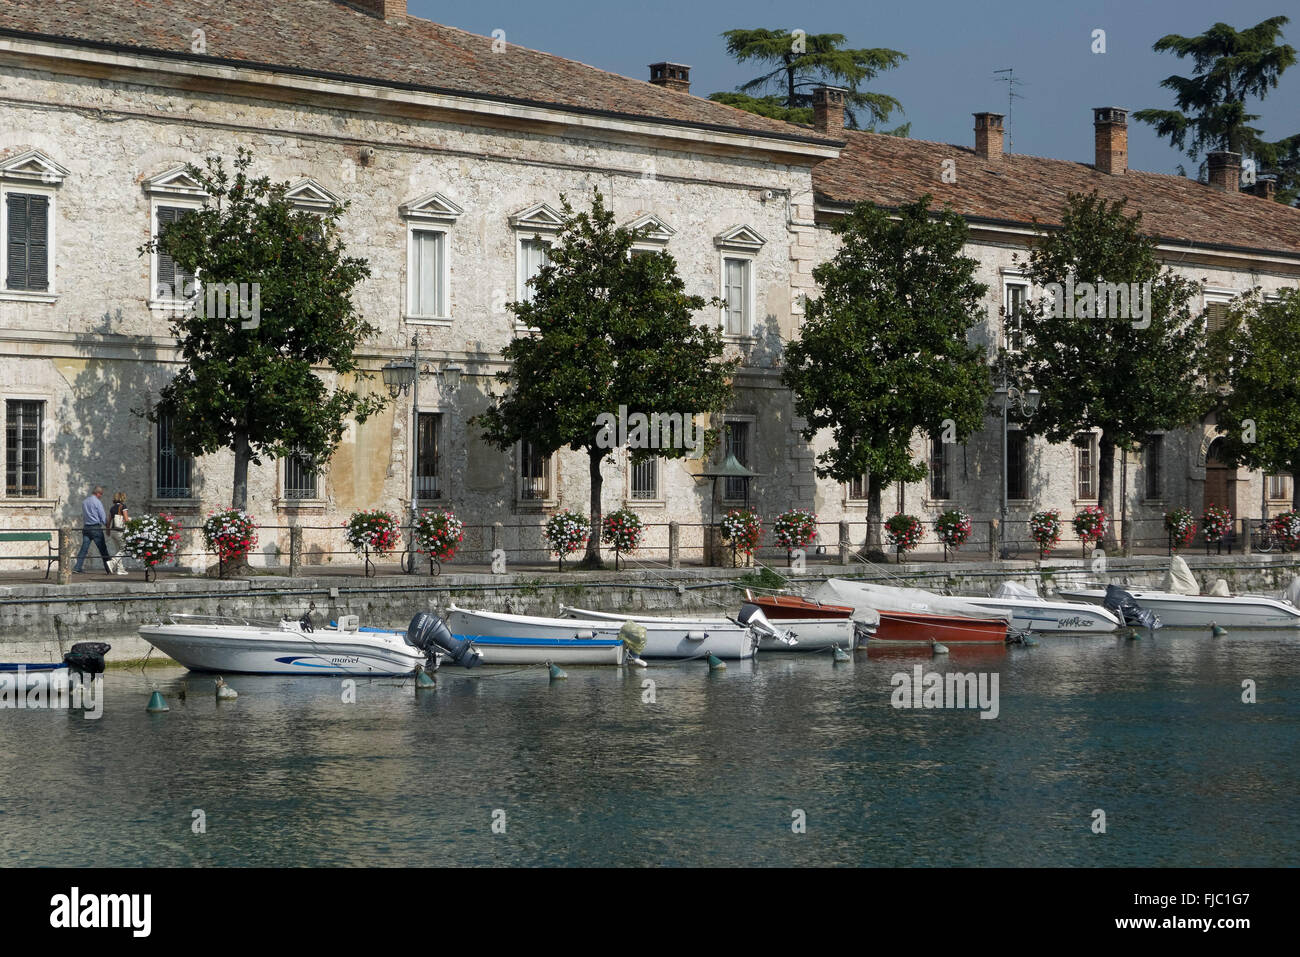 Gebäude am Hafen, Peschiera del Garda, Venetien, Italien | HARBOR building, Peschiera del Garda, Veneto, Italia Foto de stock